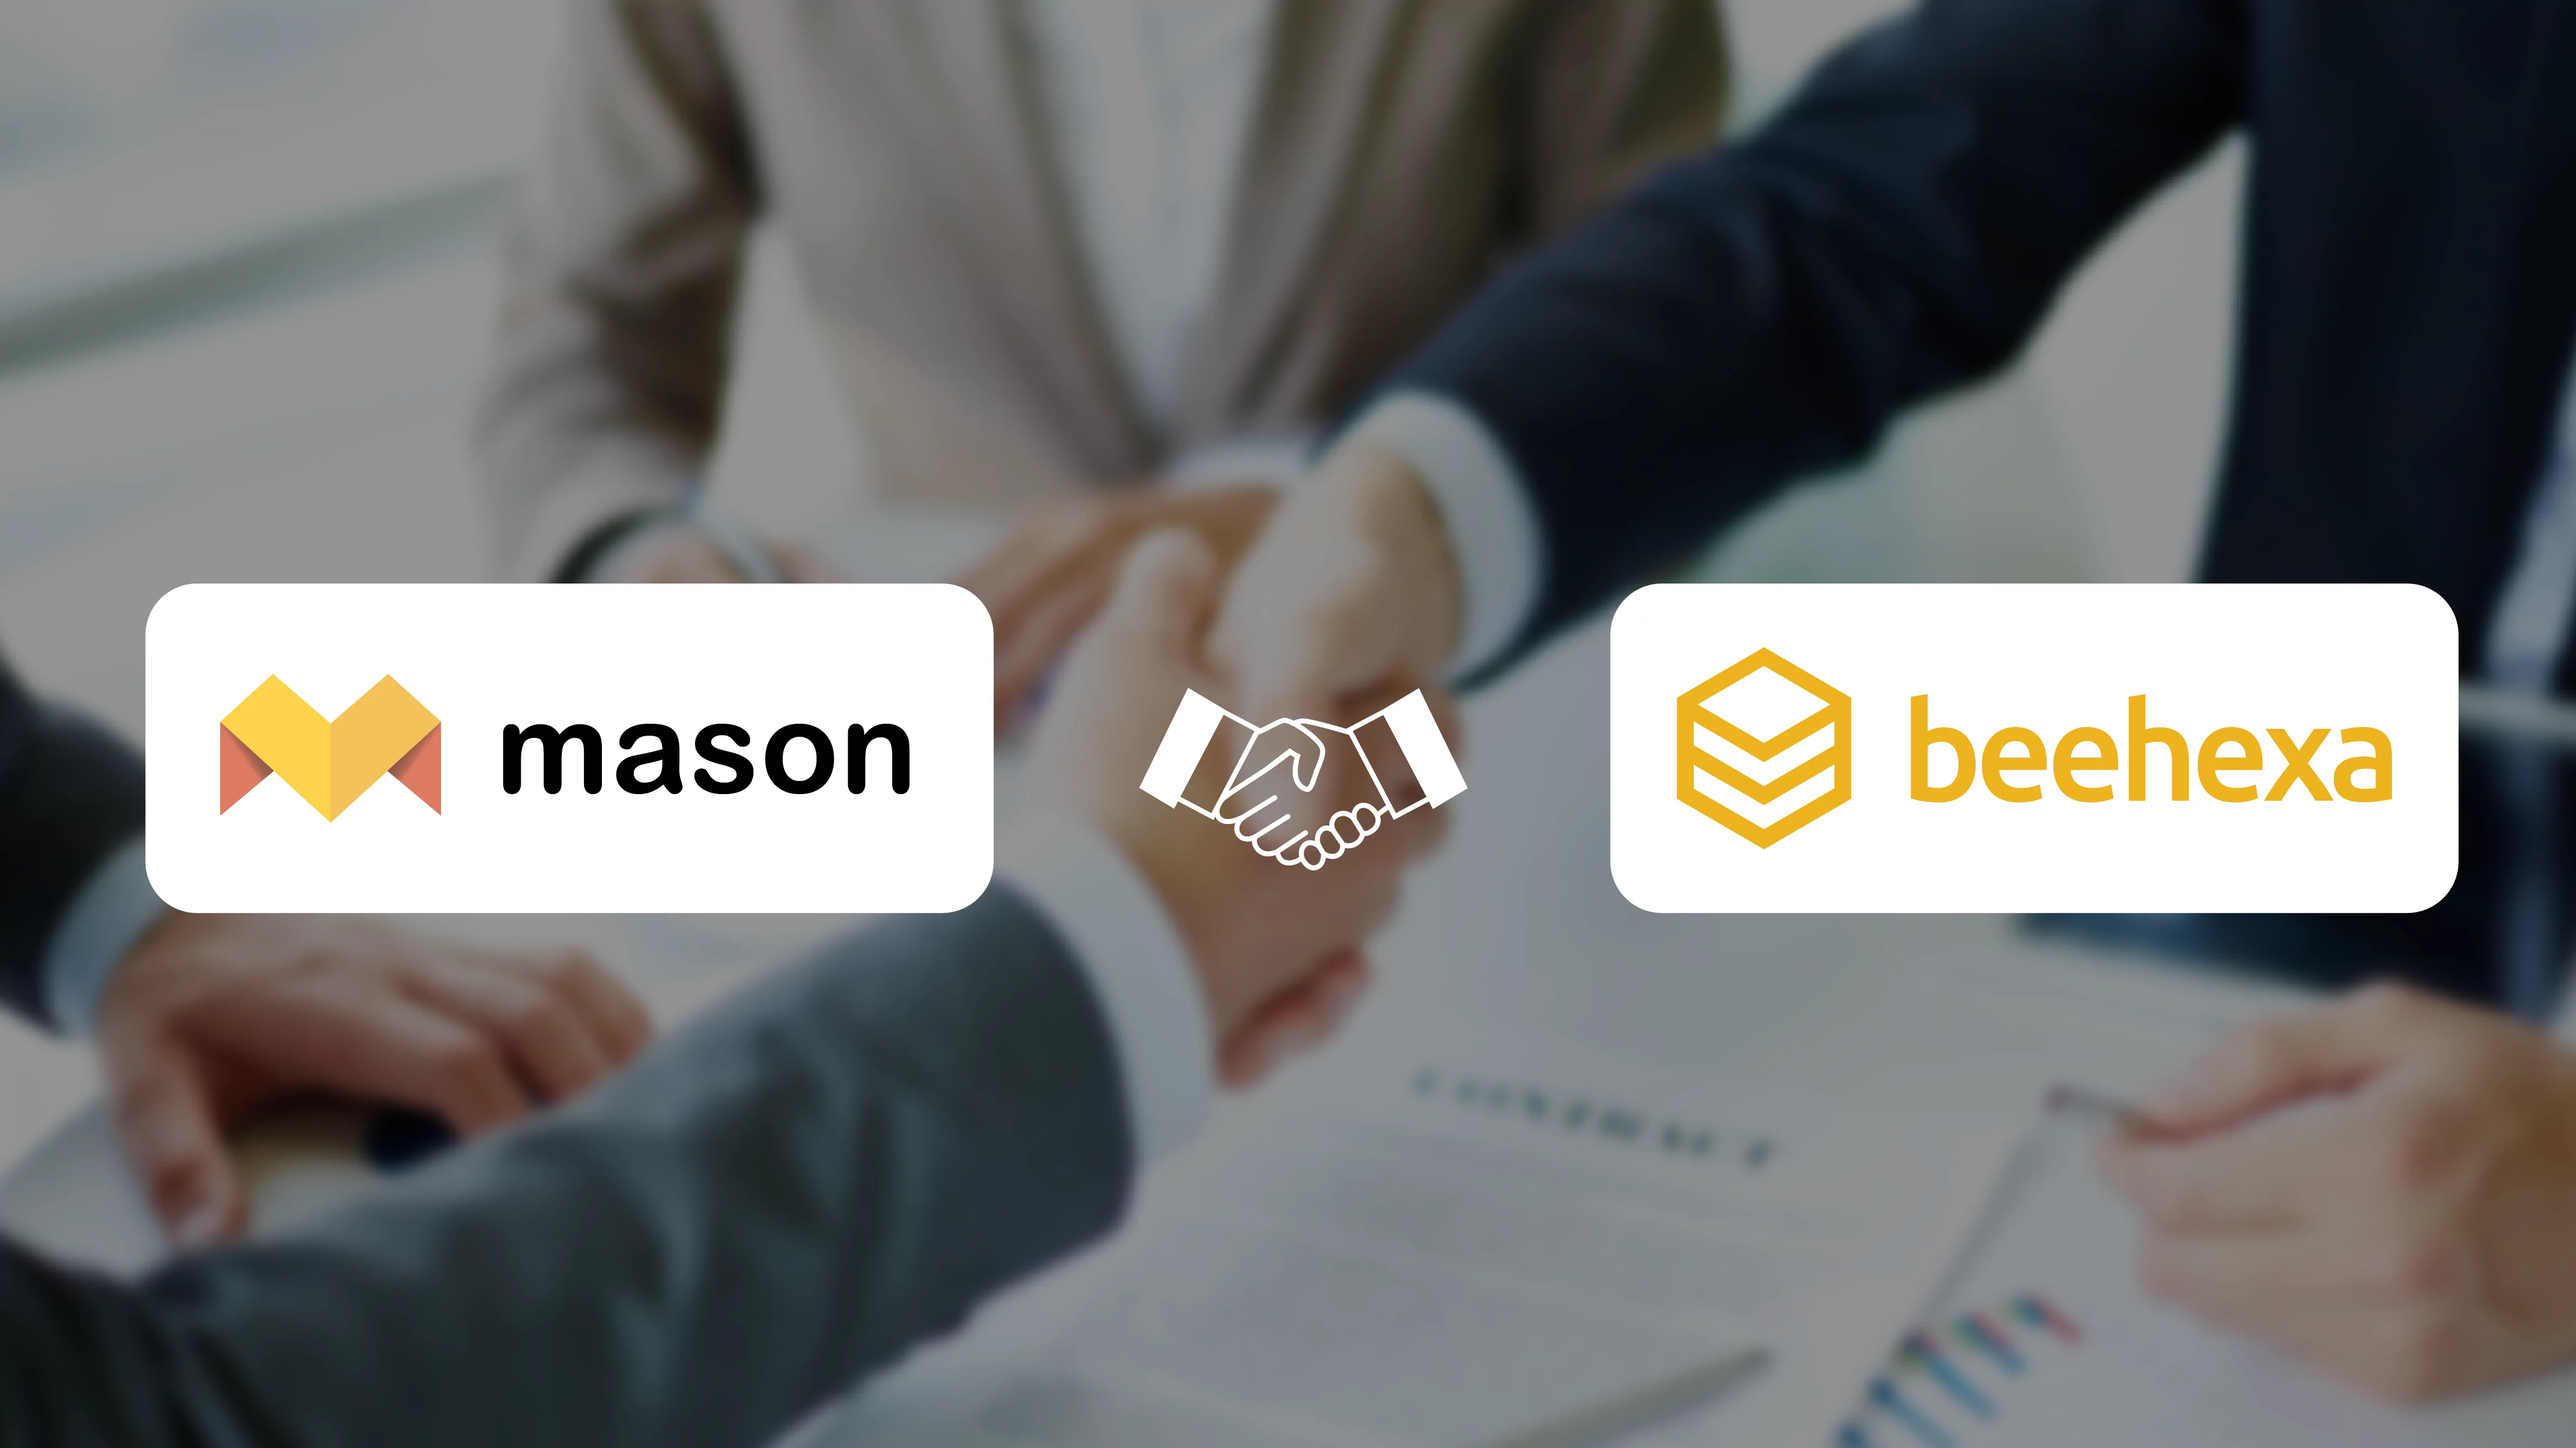 Mason And Beehexa Partnership